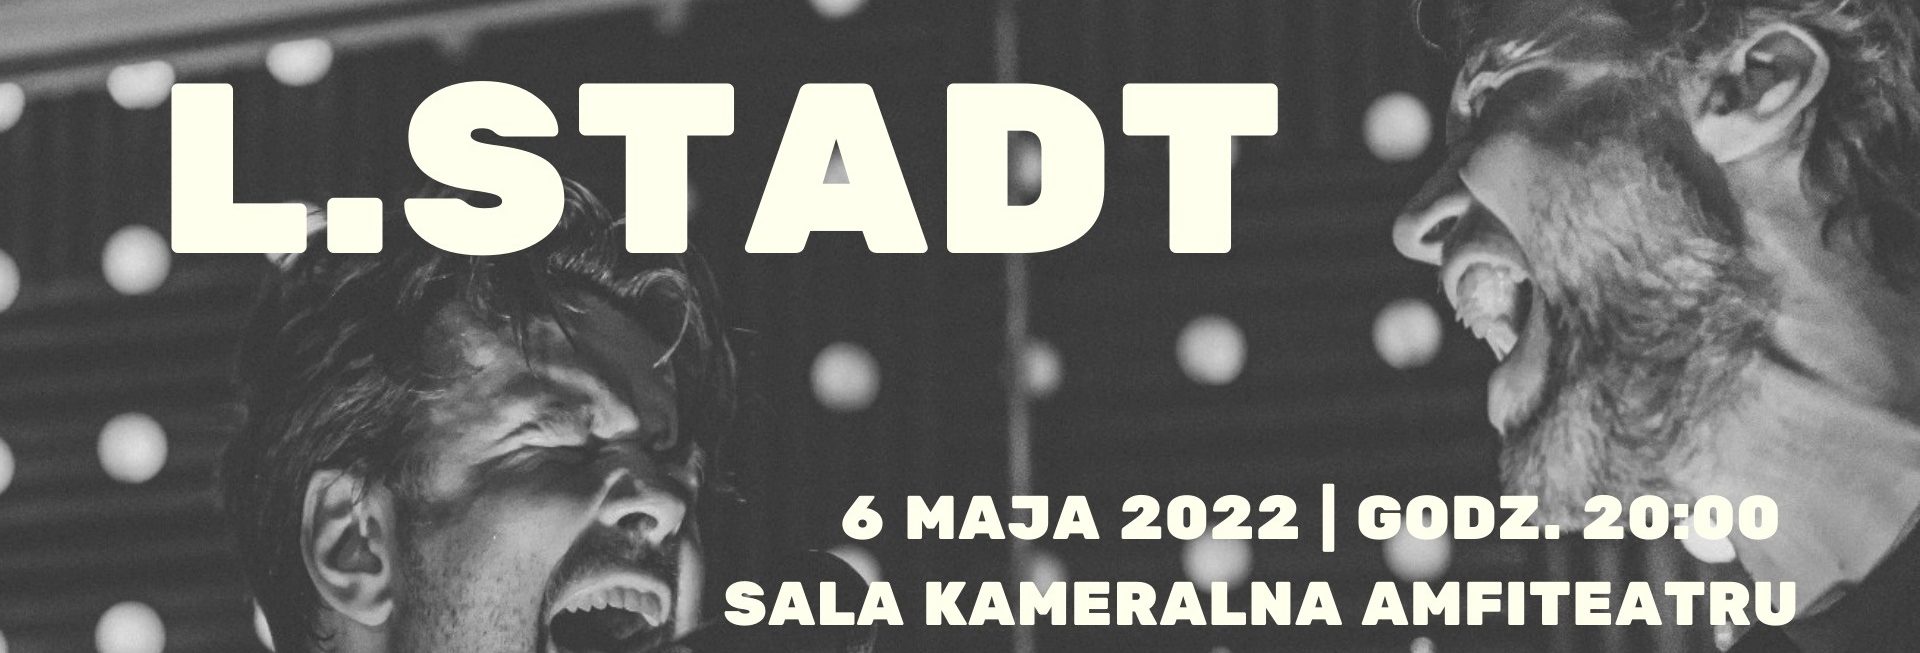 Plakat graficzny zapraszający do Ostródy na koncert zespołu L.STADT. 